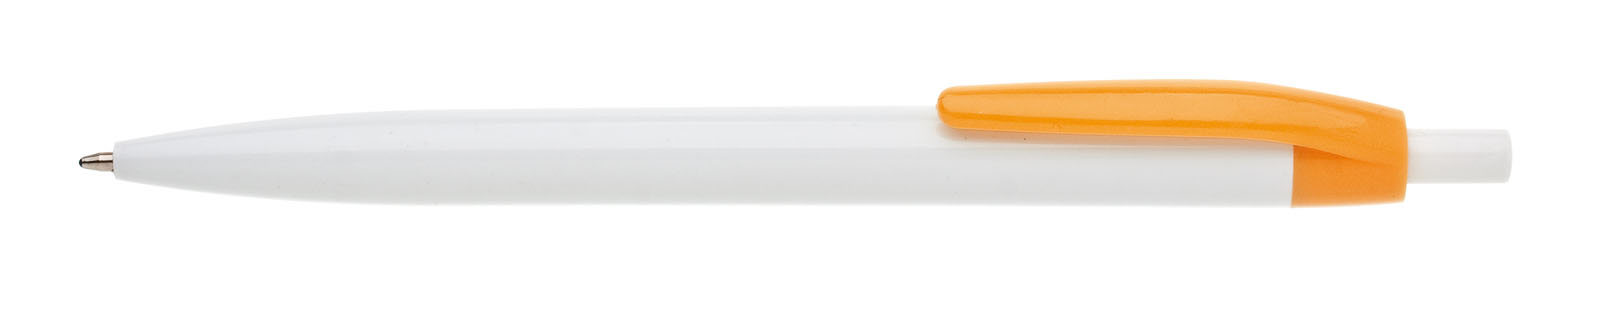 Propiska plast LIDO, oranžová